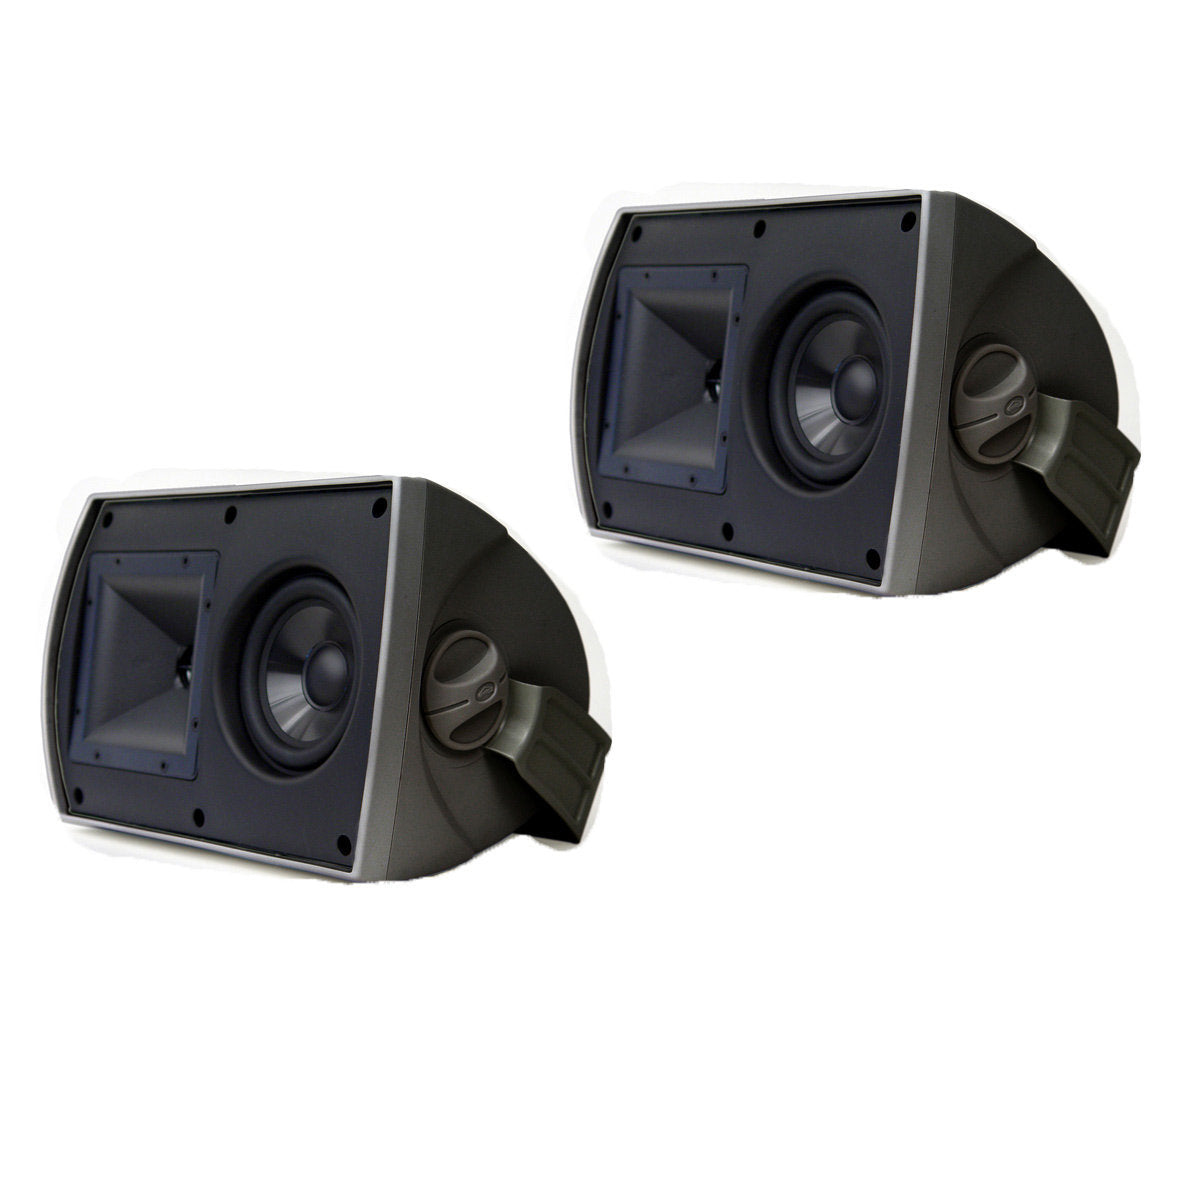 Restored Klipsch AW-525 Indoor/Outdoor Speakers All-Weather Outdoor Speaker - Black (Pair) (Refurbished) - image 4 of 5